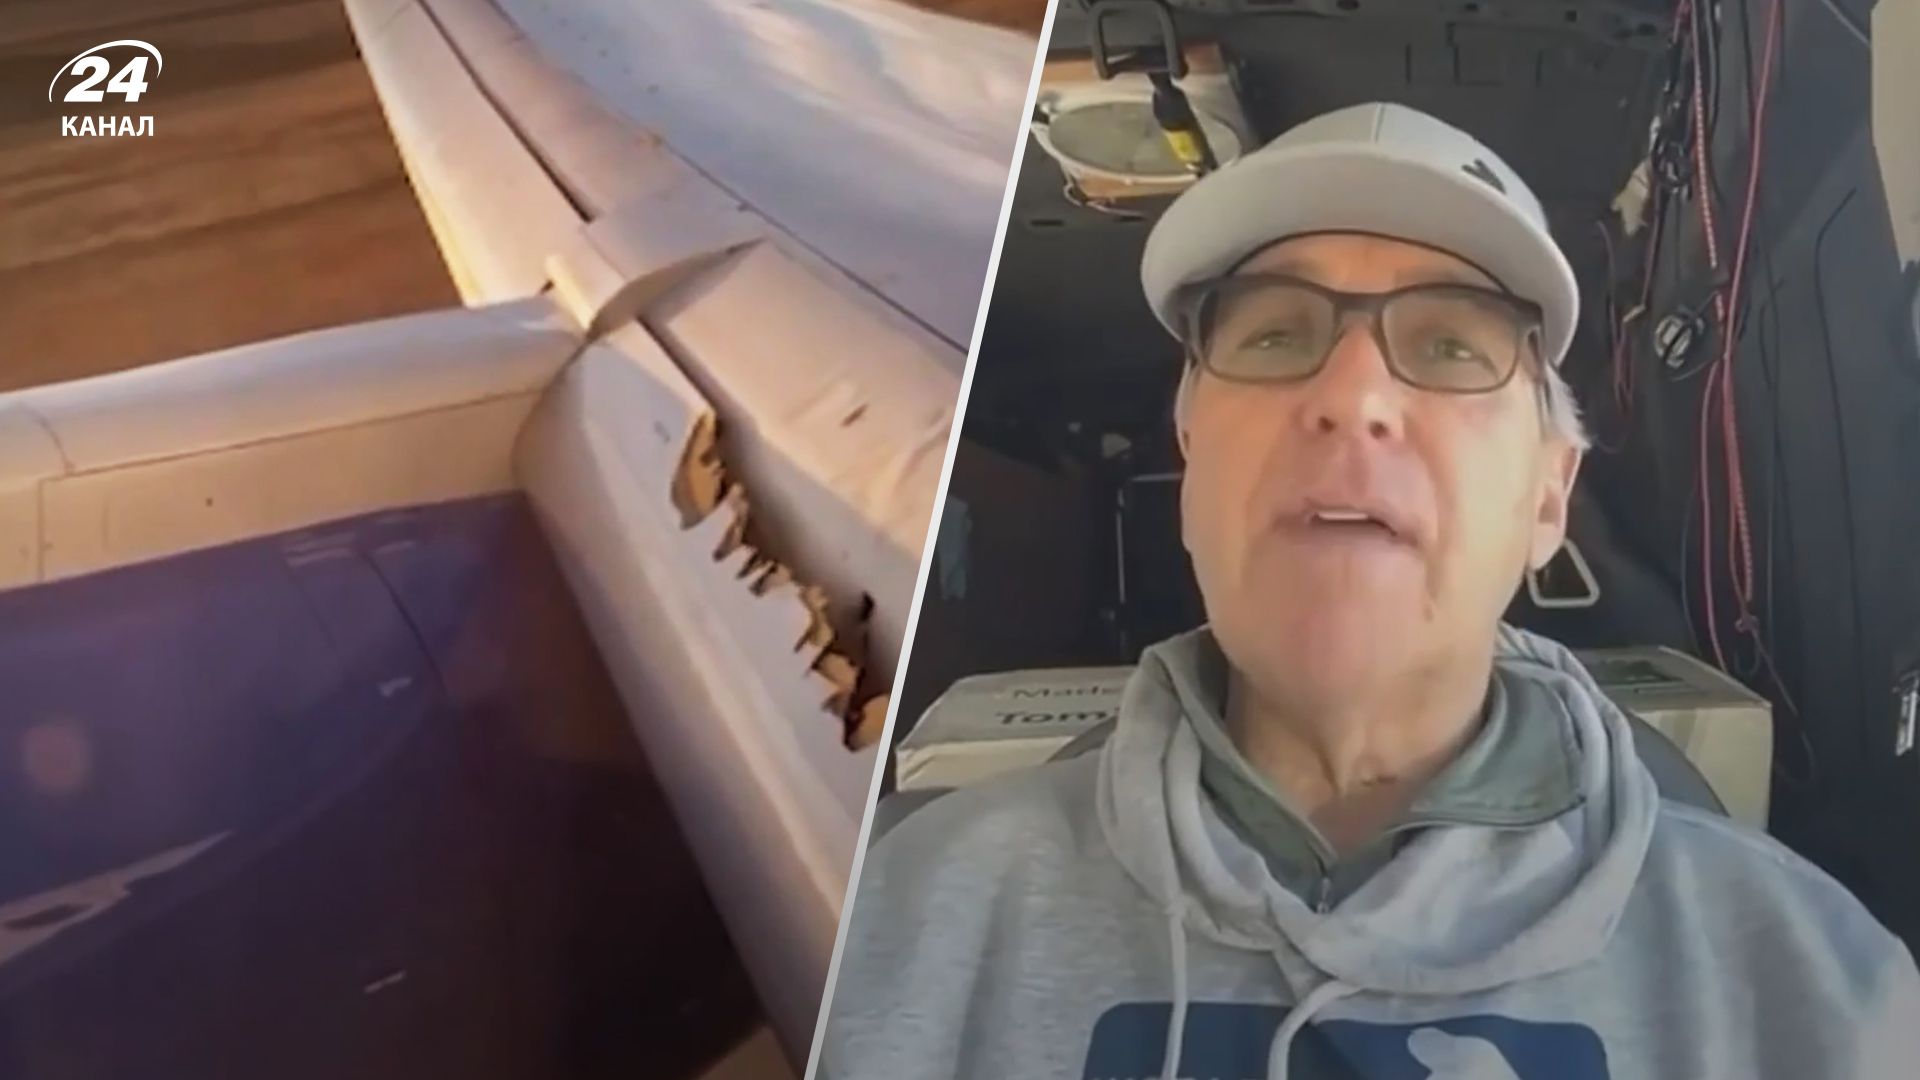 Кевин Кларк находился на борту самолета United Airlines, когда у него начало отваливаться крыло